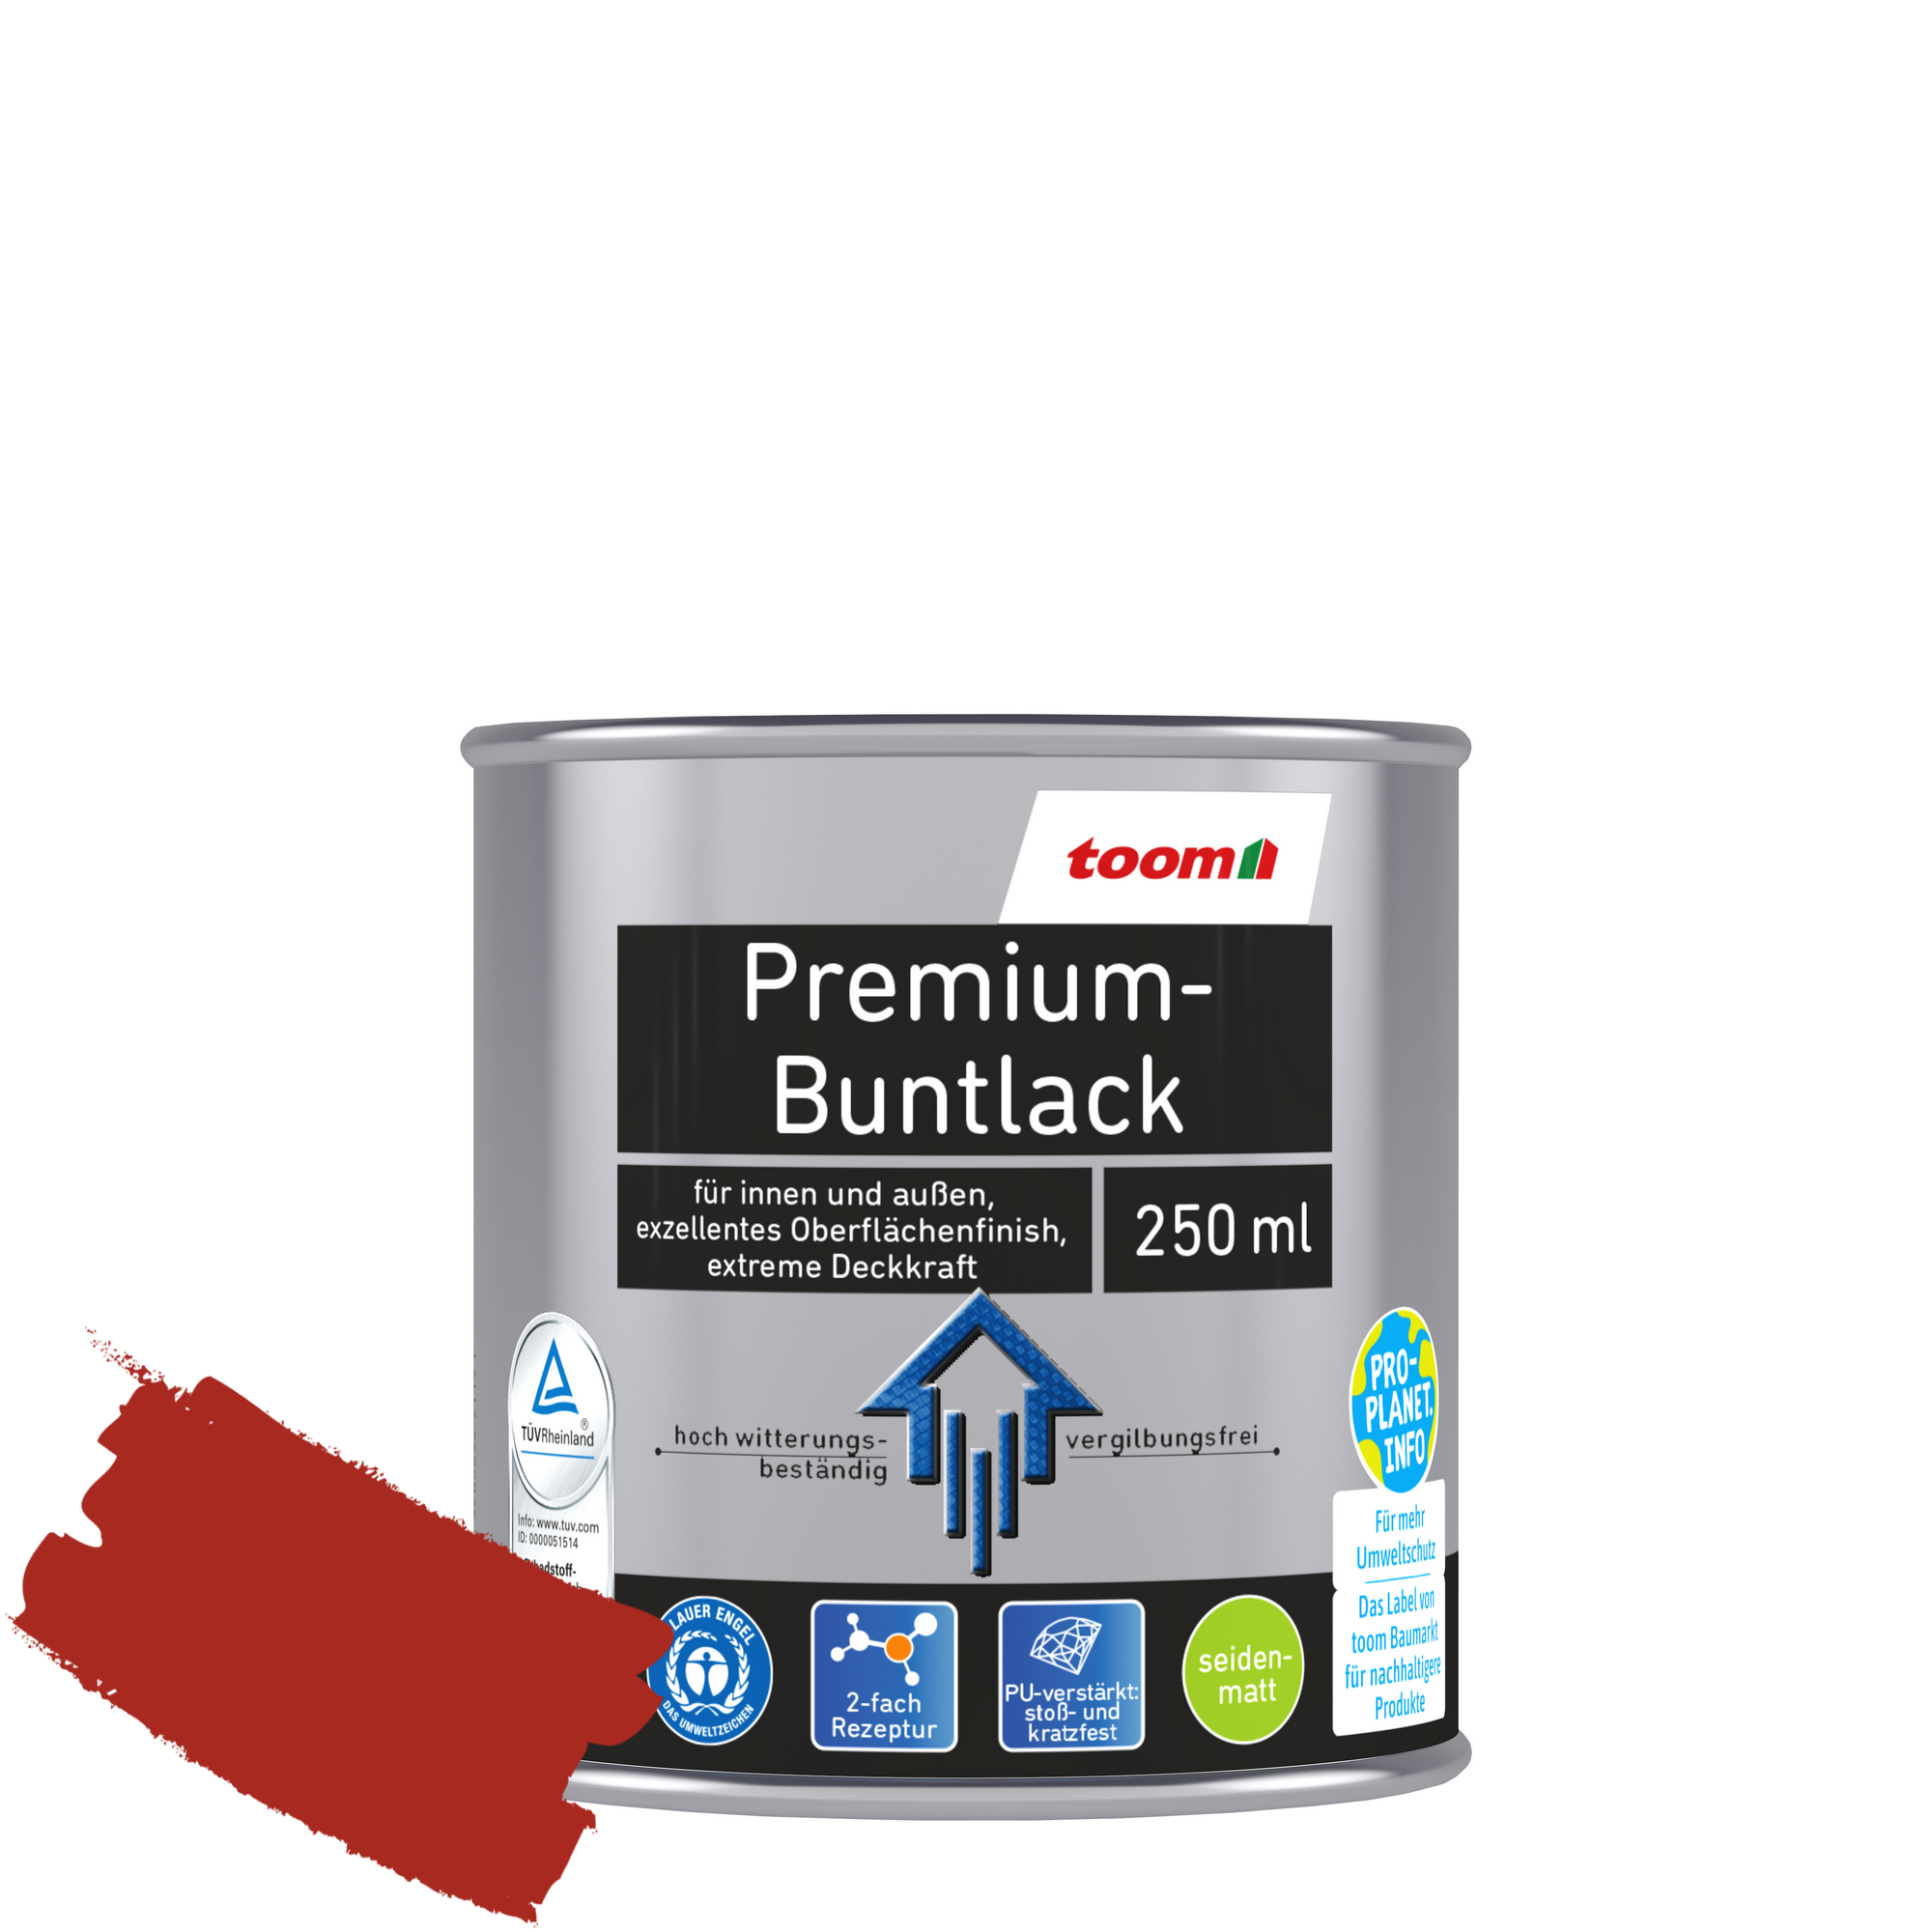 Premium-Buntlack feuerrot seidenmatt 250 ml + product picture